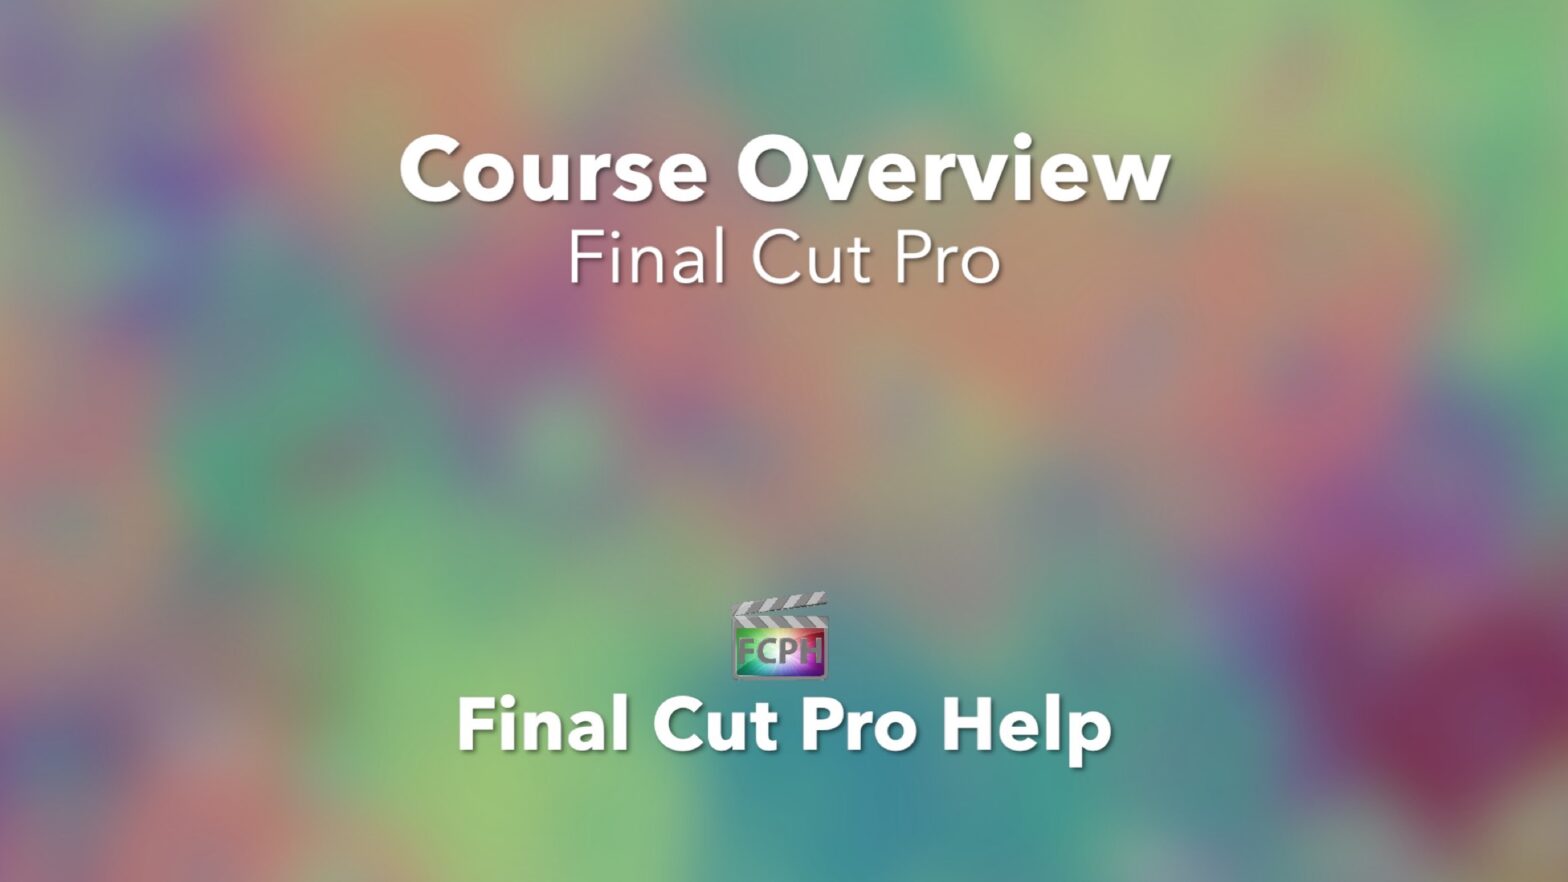 Course Overview Final Cut Pro